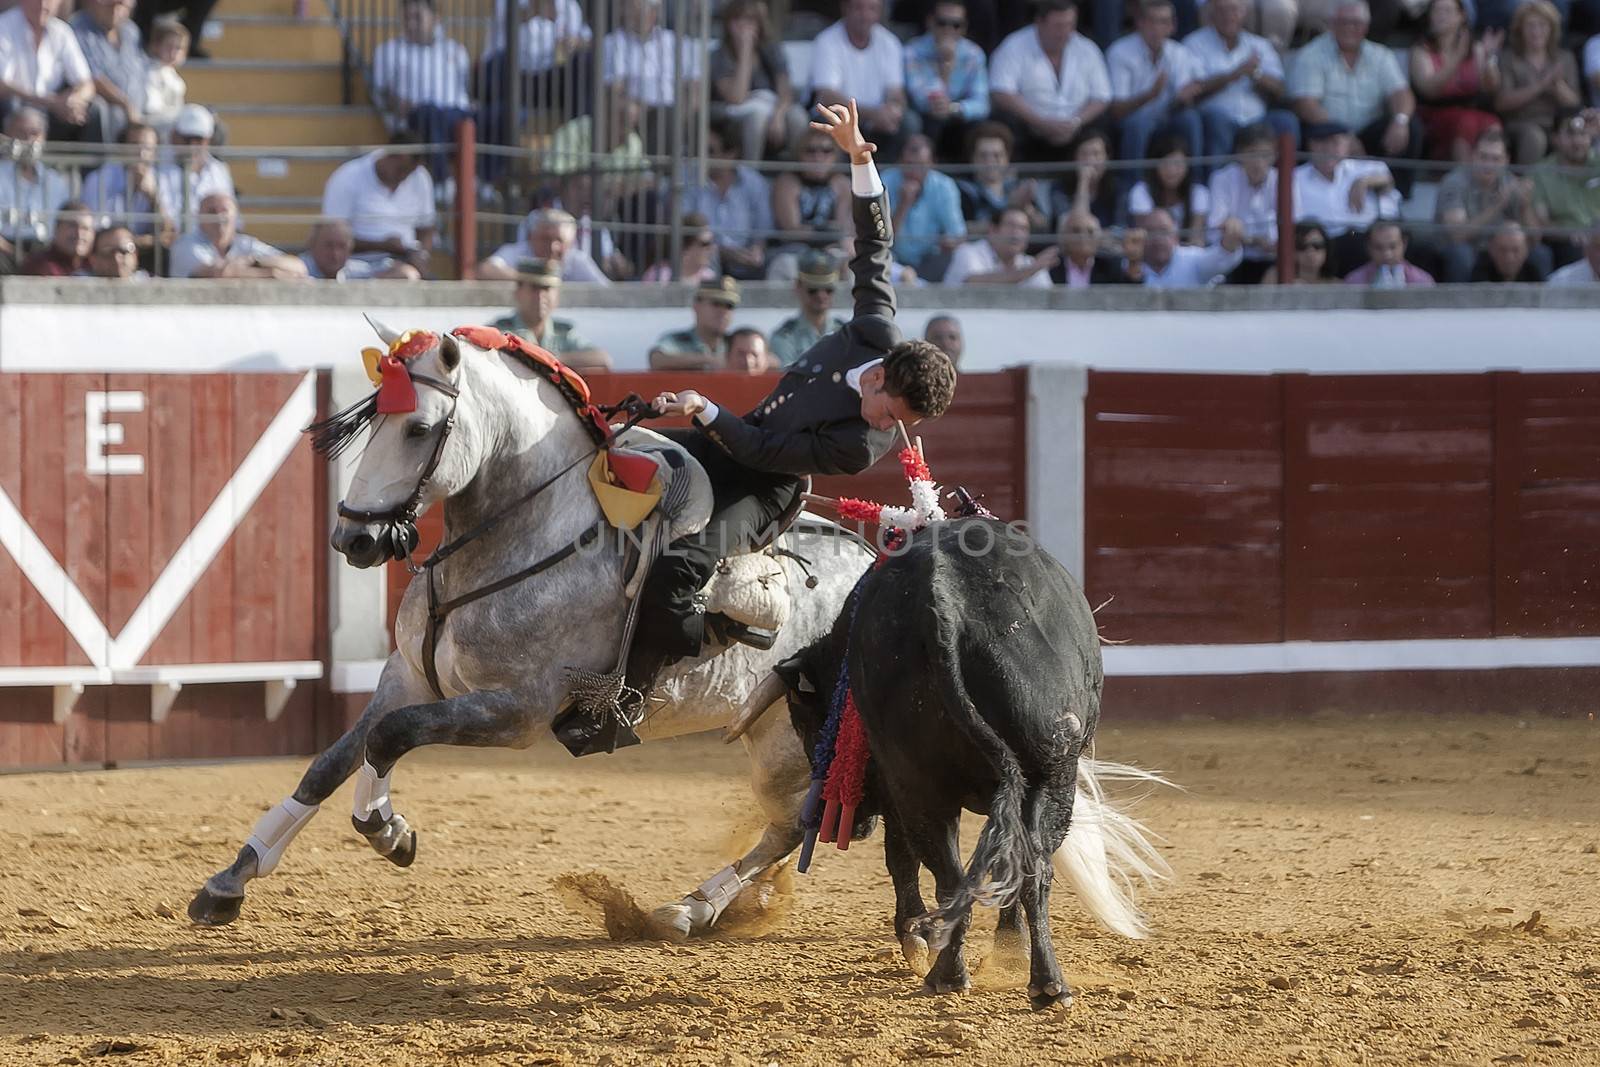 Pozoblanco, Cordoba province, SPAIN - 14 august 2011: Spanish bullfighter on horseback Leonardo Hernandez putting the bull banderillas in Pozoblanco, Cordoba province, Andalusia, Spain